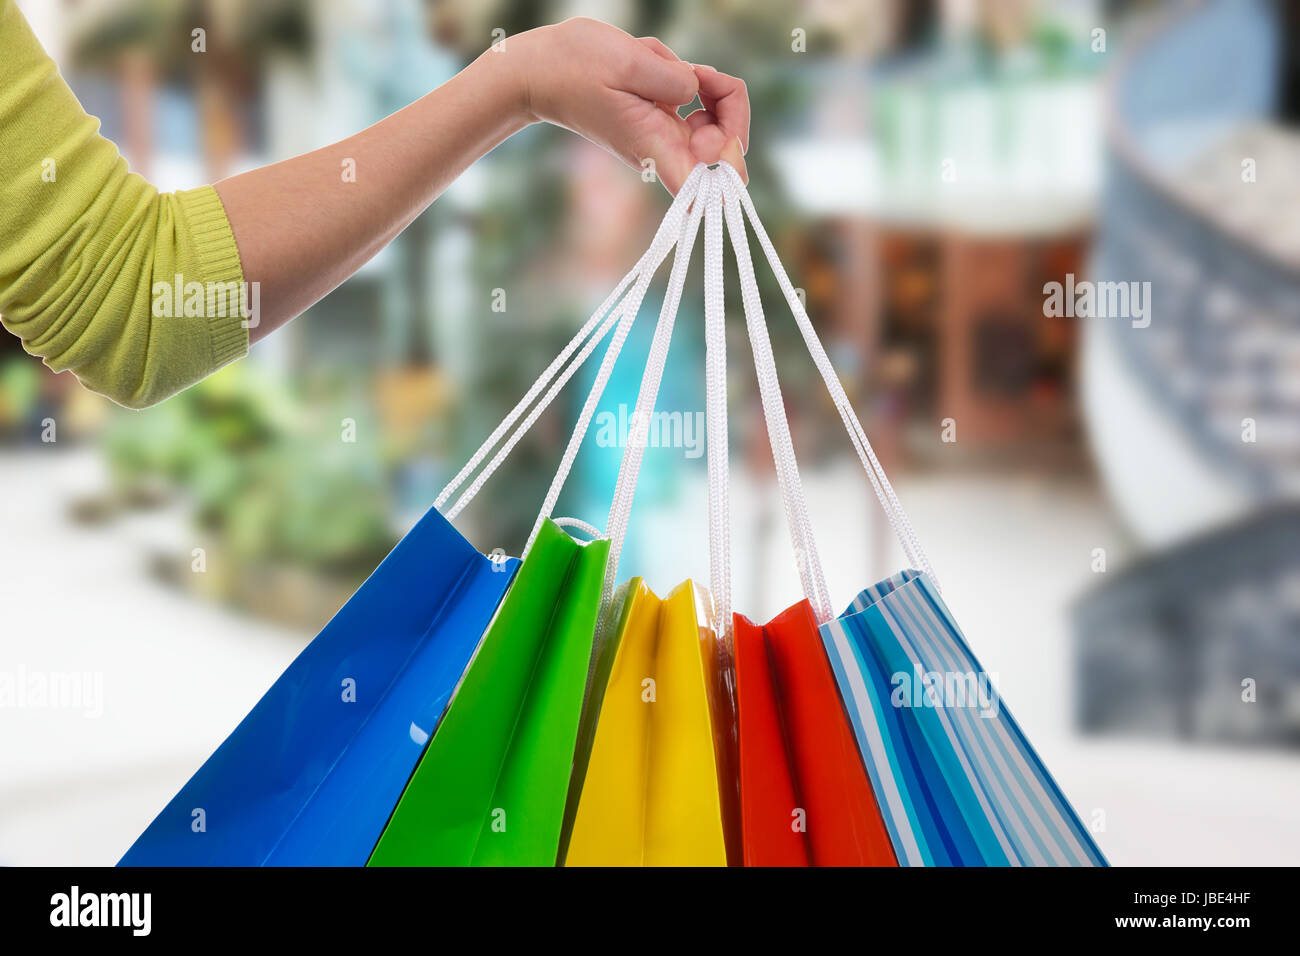 Eine junge Frau hält Einkaufstaschen fürs Shopping in der Hand in einer Shopping Mall Stock Photo